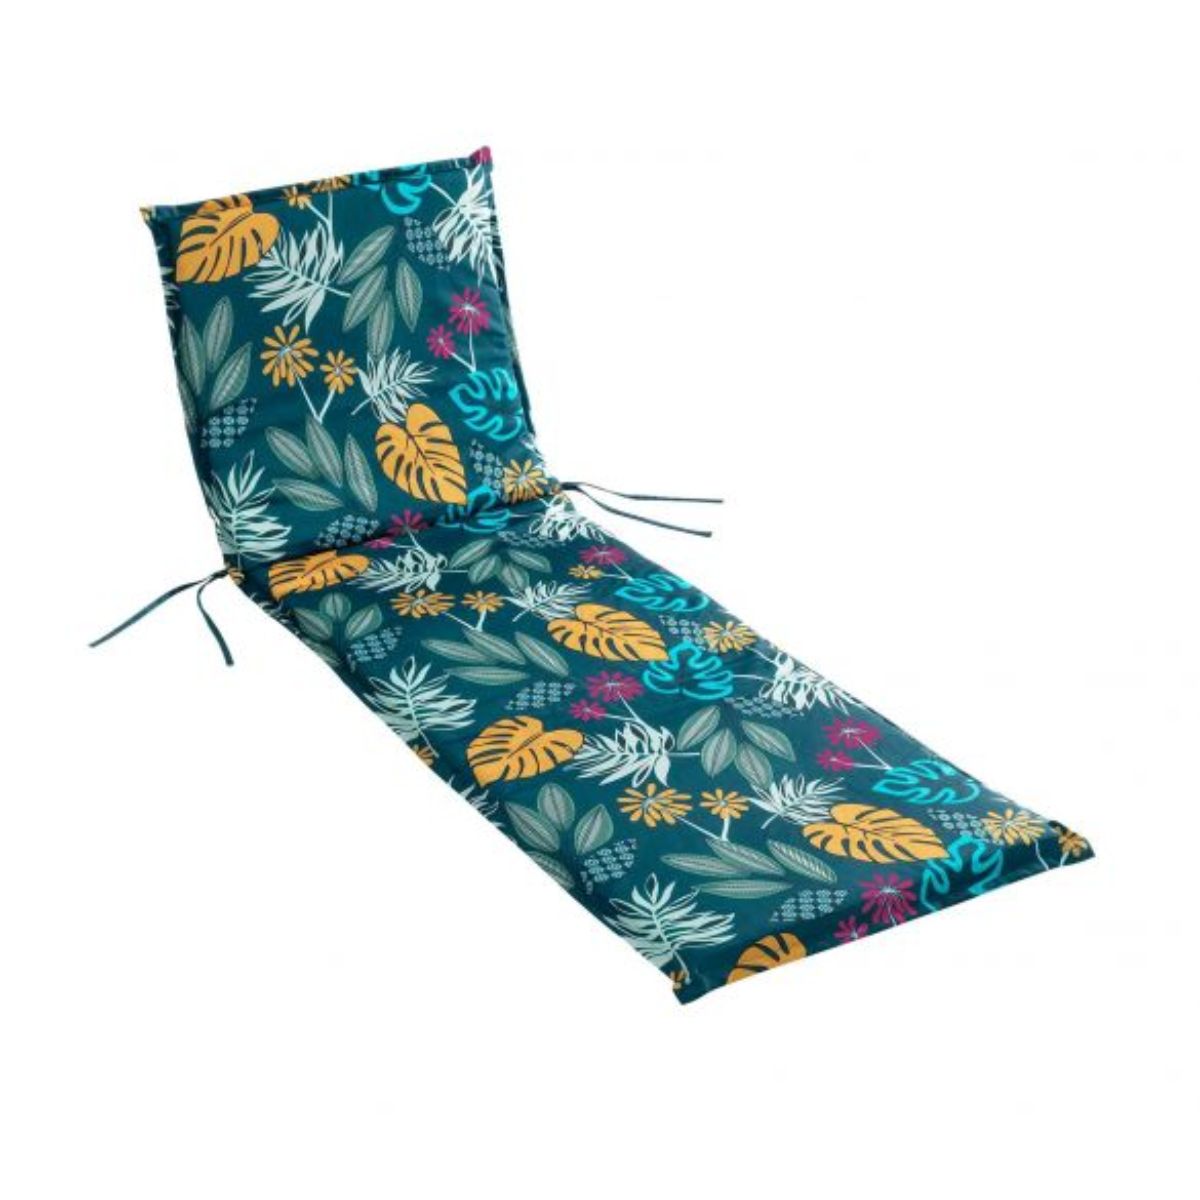 Matelas bain de soleil - 64 x 190 cm - Déperlant - Feuillage tropical